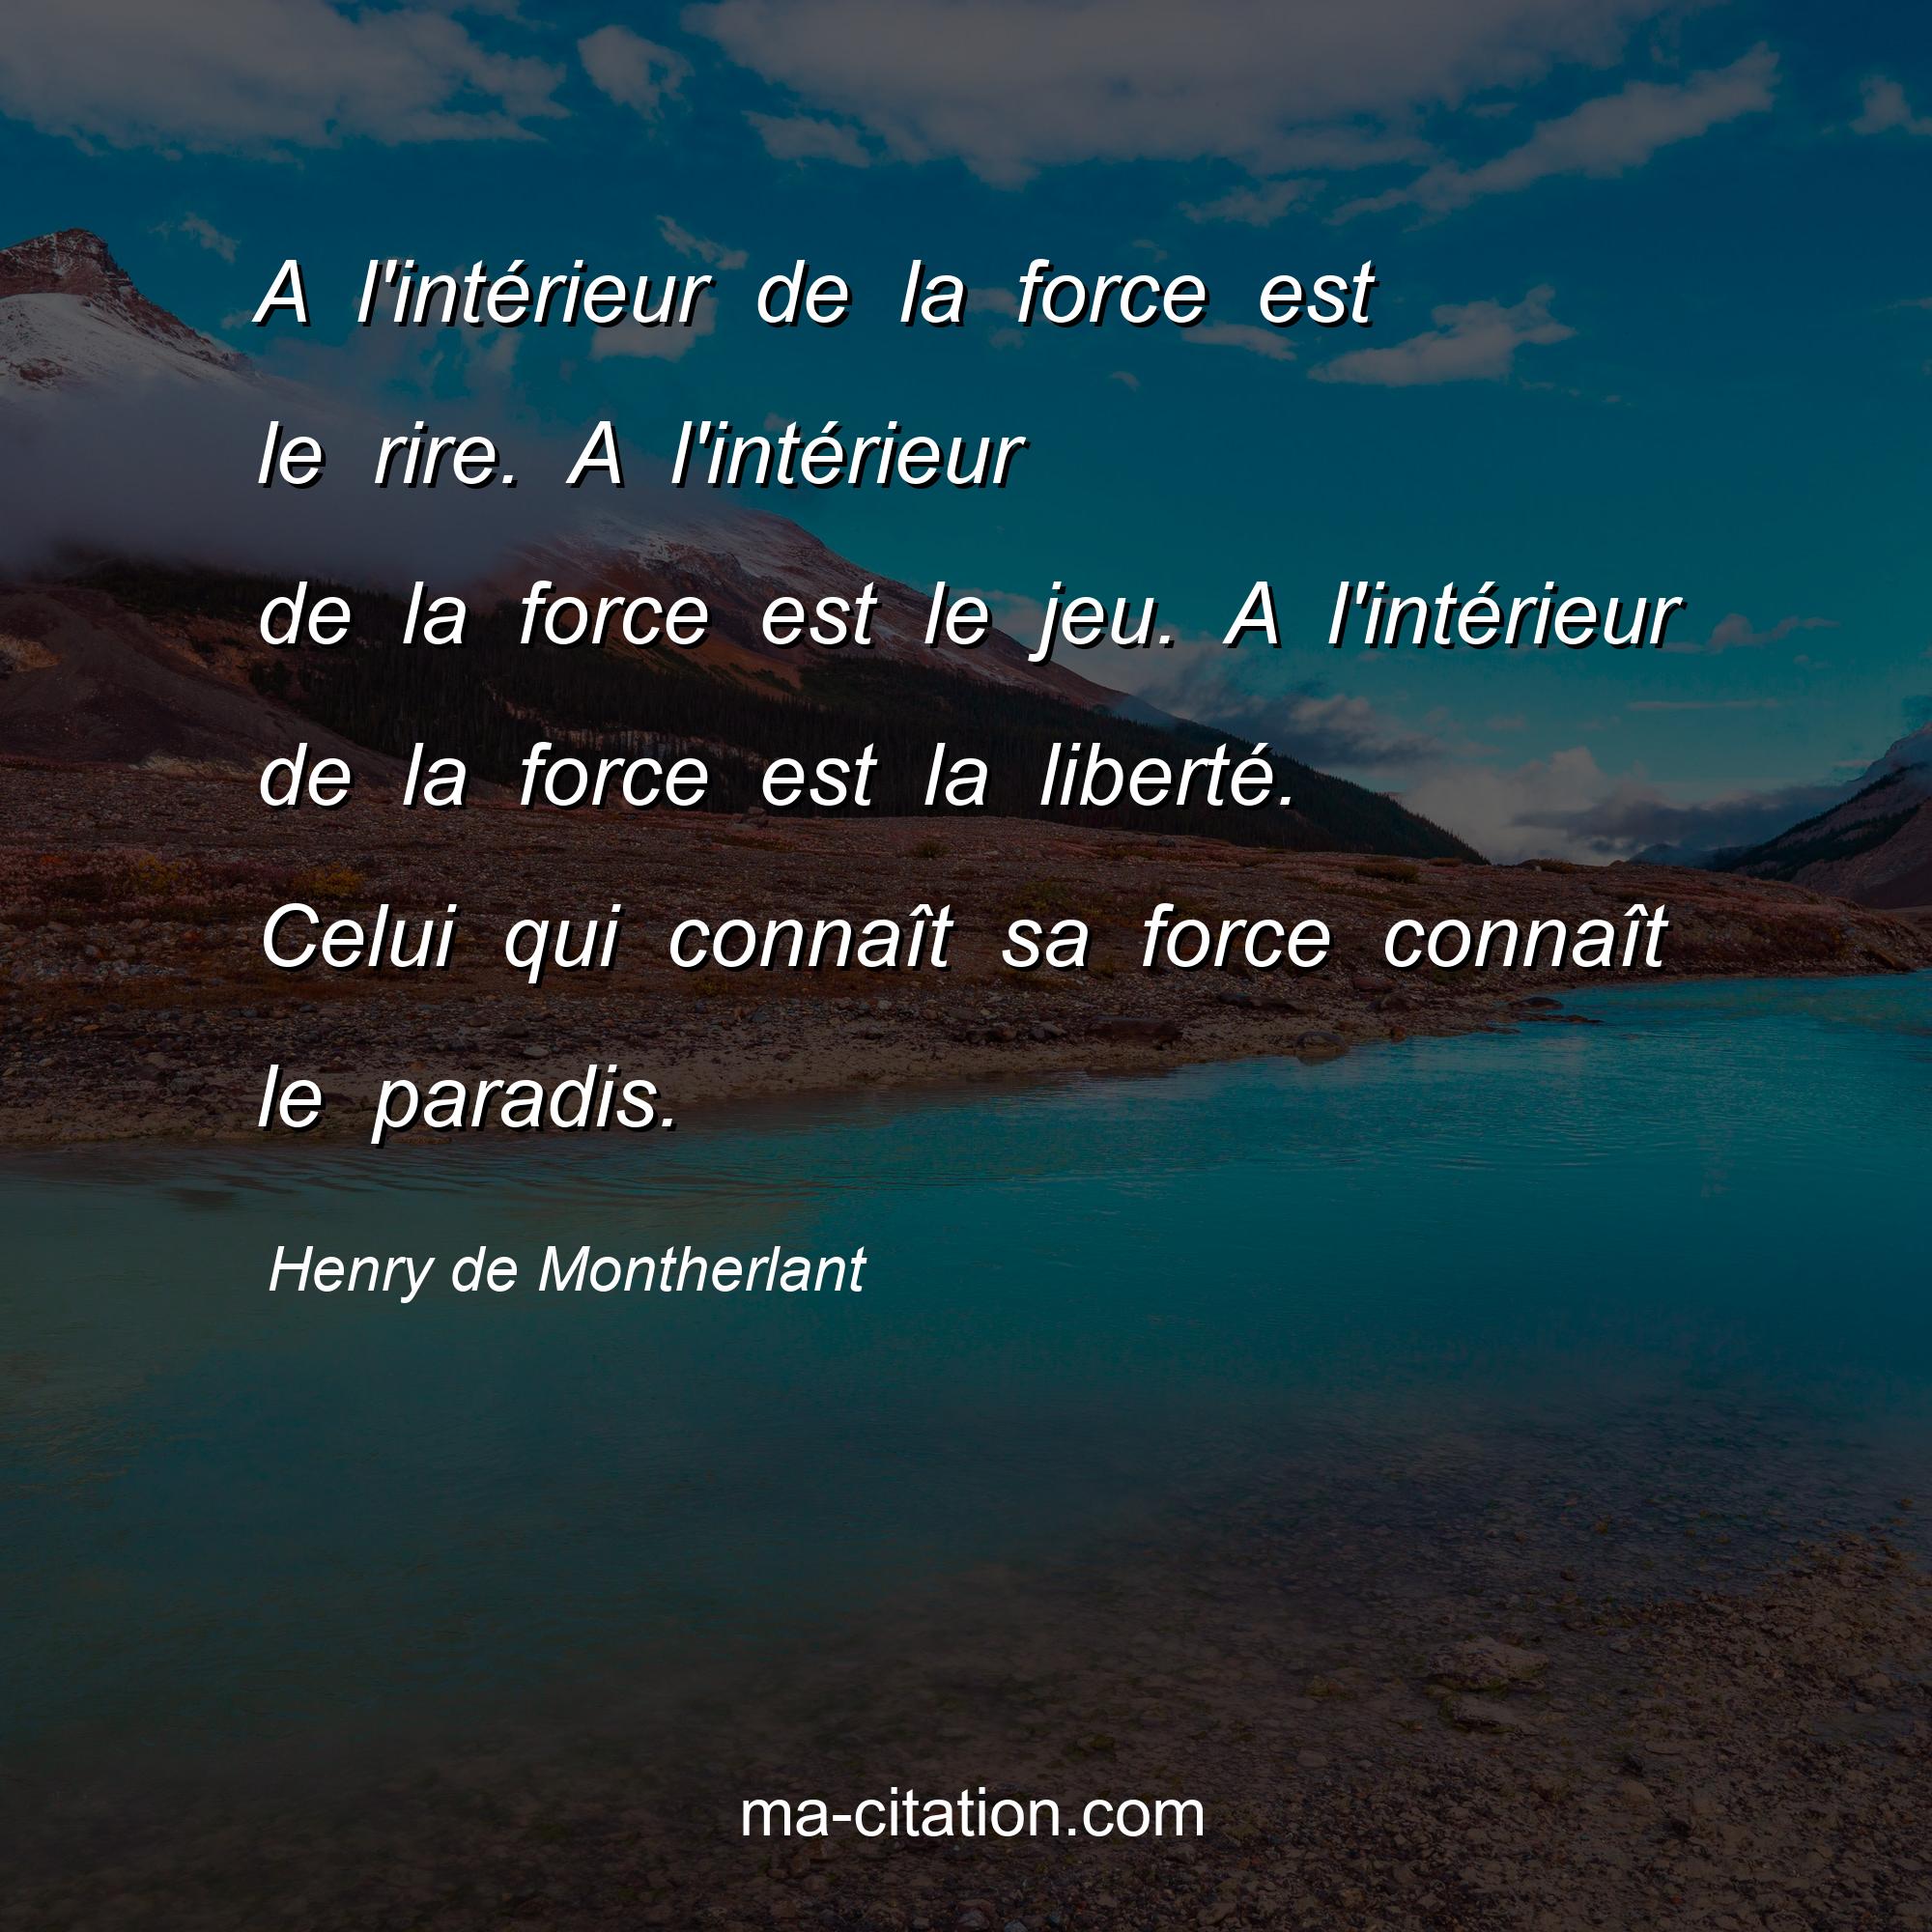 Henry de Montherlant : A l'intérieur de la force est le rire. A l'intérieur de la force est le jeu. A l'intérieur de la force est la liberté. Celui qui connaît sa force connaît le paradis.